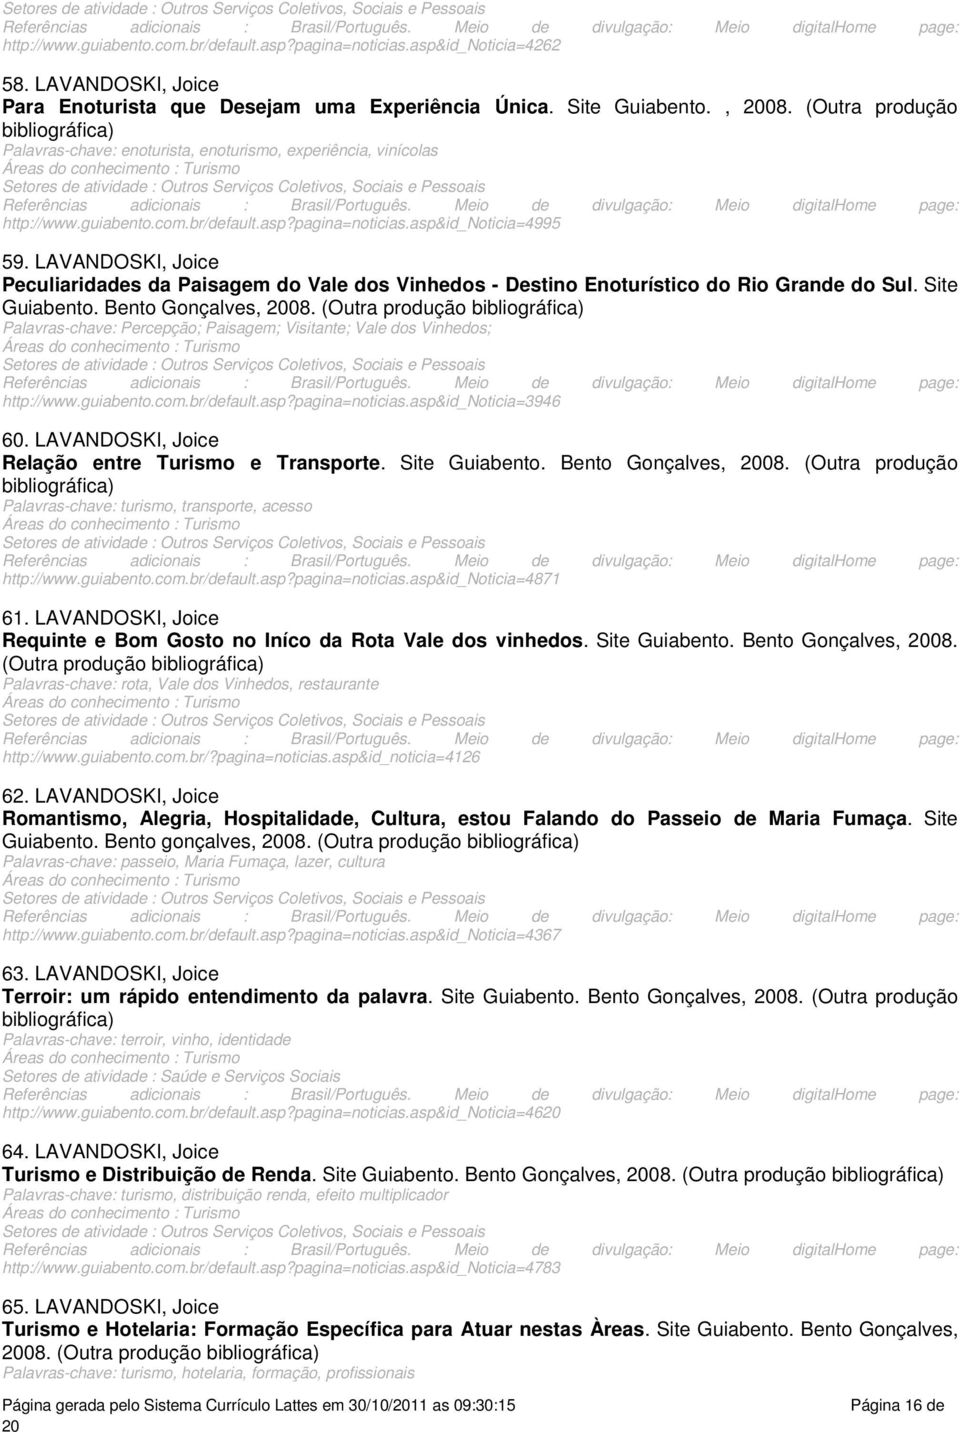 vinícolas pagina=noticiasasp&id_noticia=4995 59 LAVANDOSKI, Joice Peculiaridades da Paisagem do Vale dos Vinhedos - Destino Enoturístico do Rio Grande do Sul Site Guiabento Bento Gonçalves, 08 (Outra